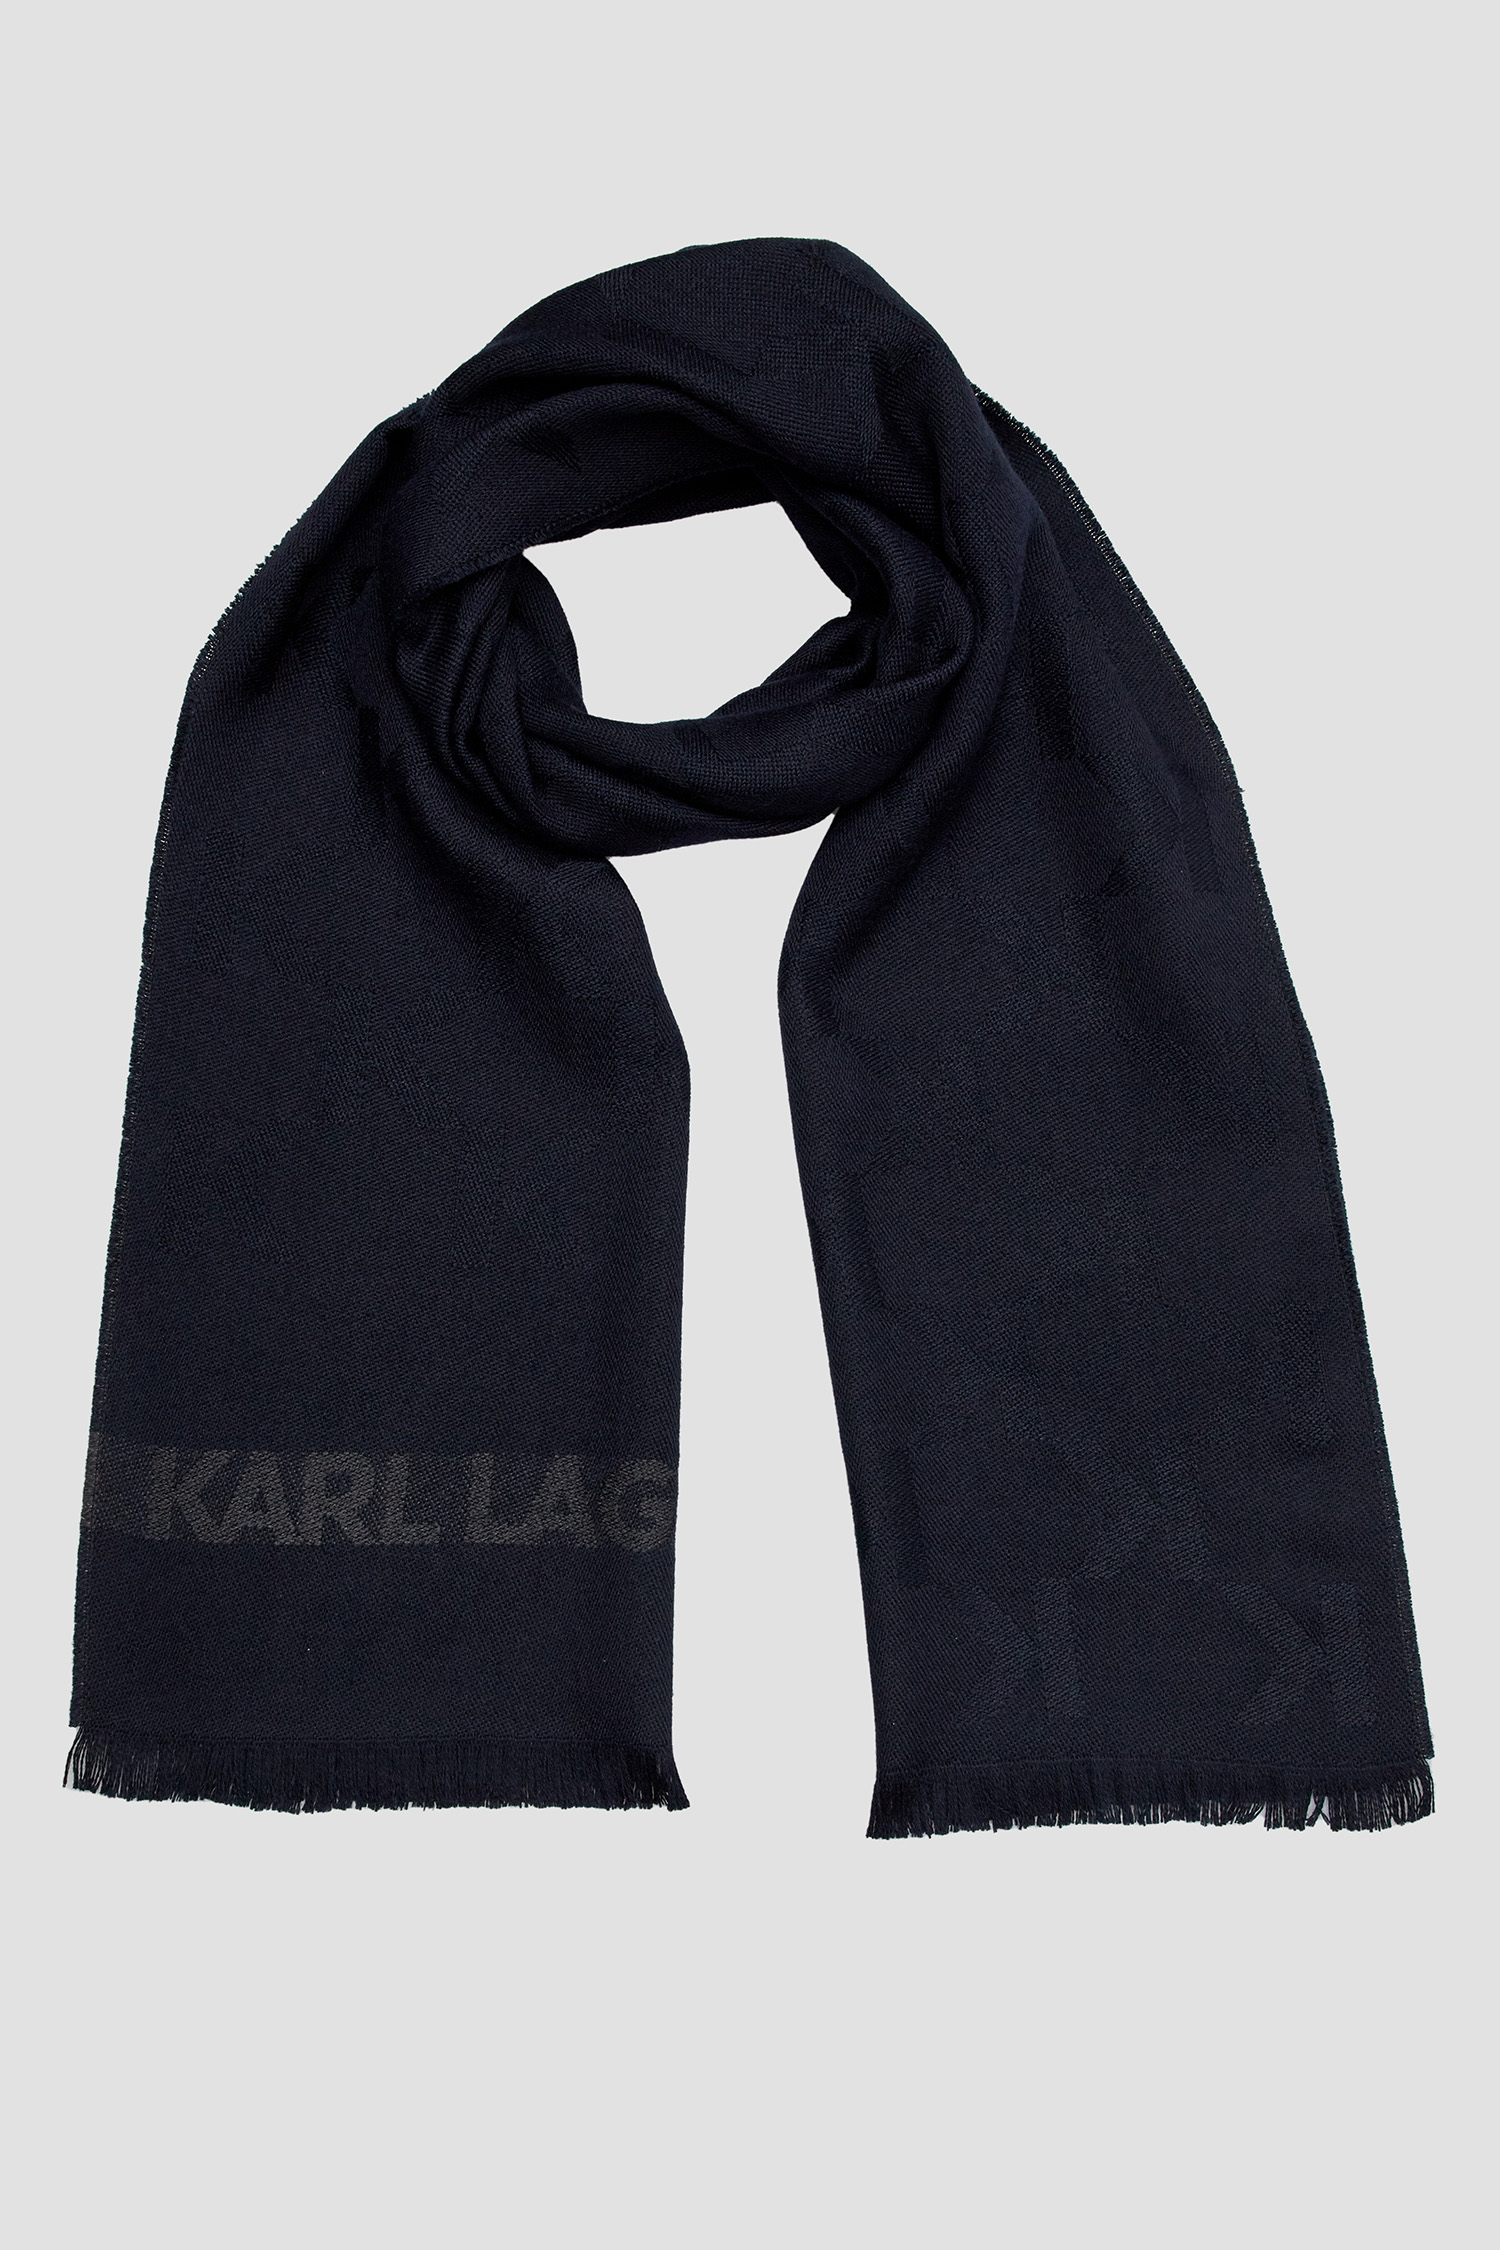 Мужской темно-синий шерстяной шарф с узором Karl Lagerfeld 534135.805001;690